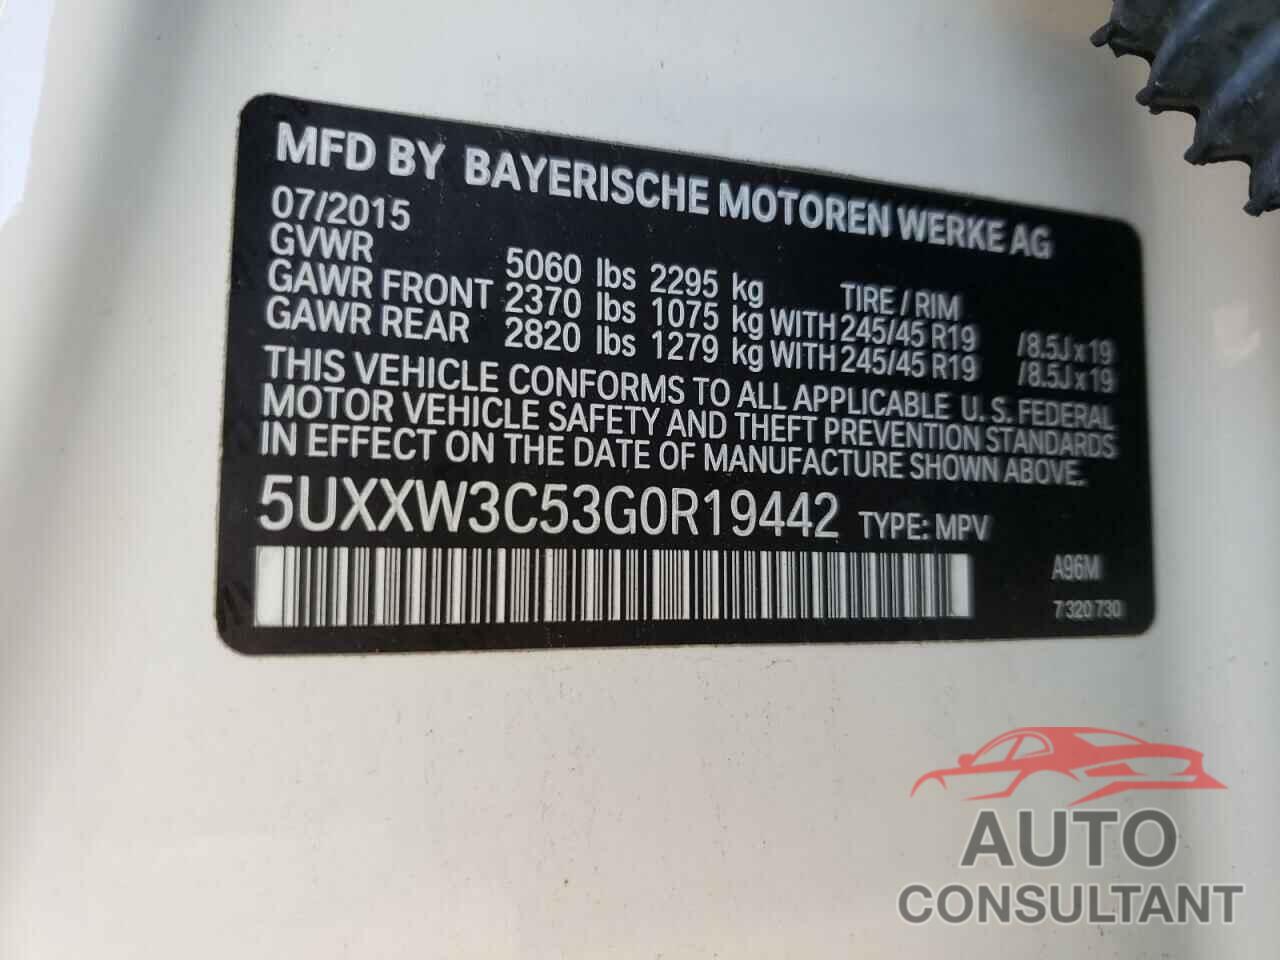 BMW X4 2016 - 5UXXW3C53G0R19442